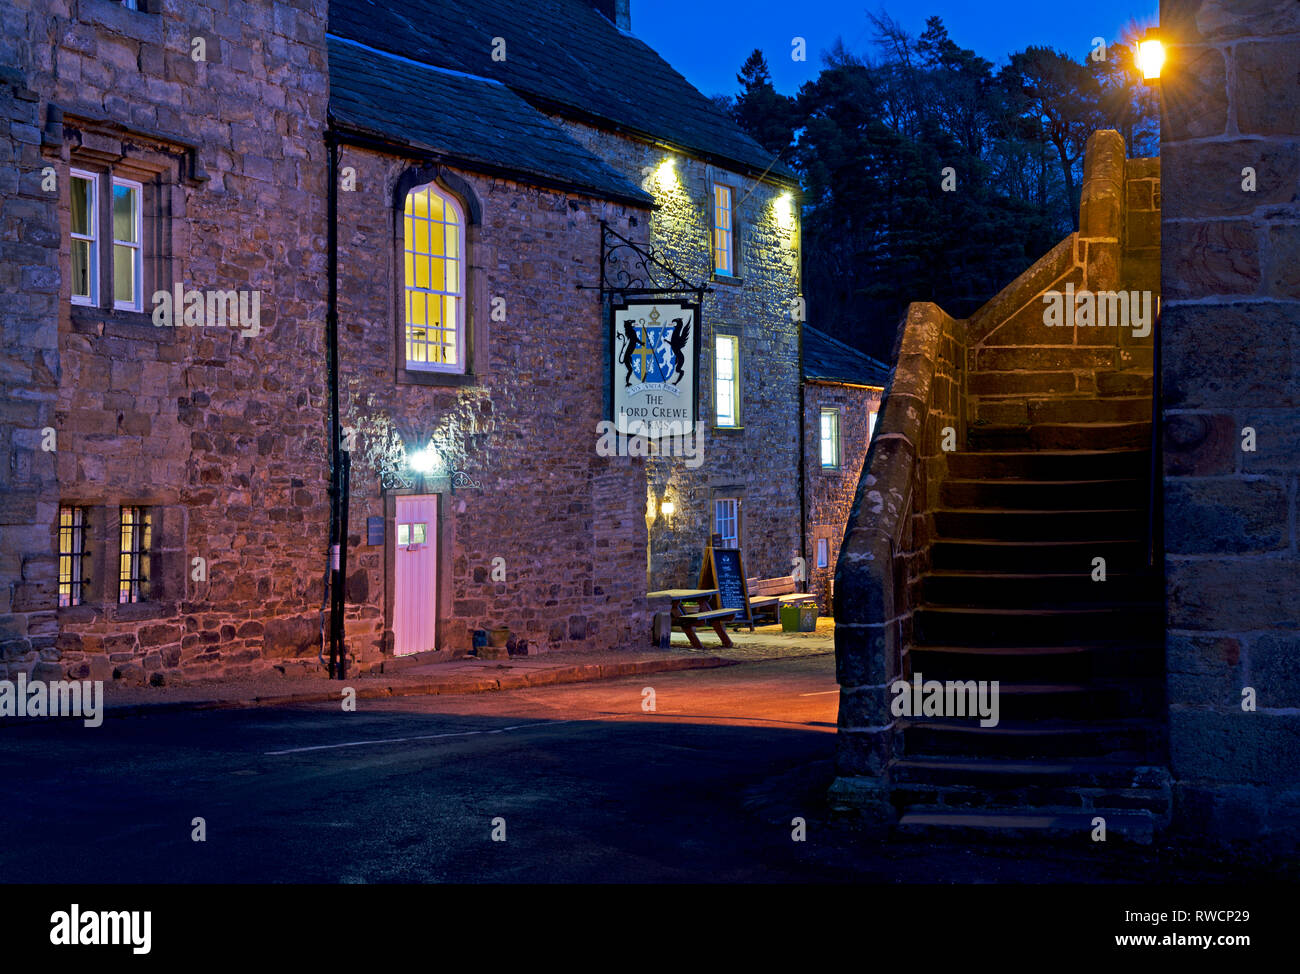 Il Signore Crewe Arms al crepuscolo, Blanchland, Northumberland, England Regno Unito Foto Stock